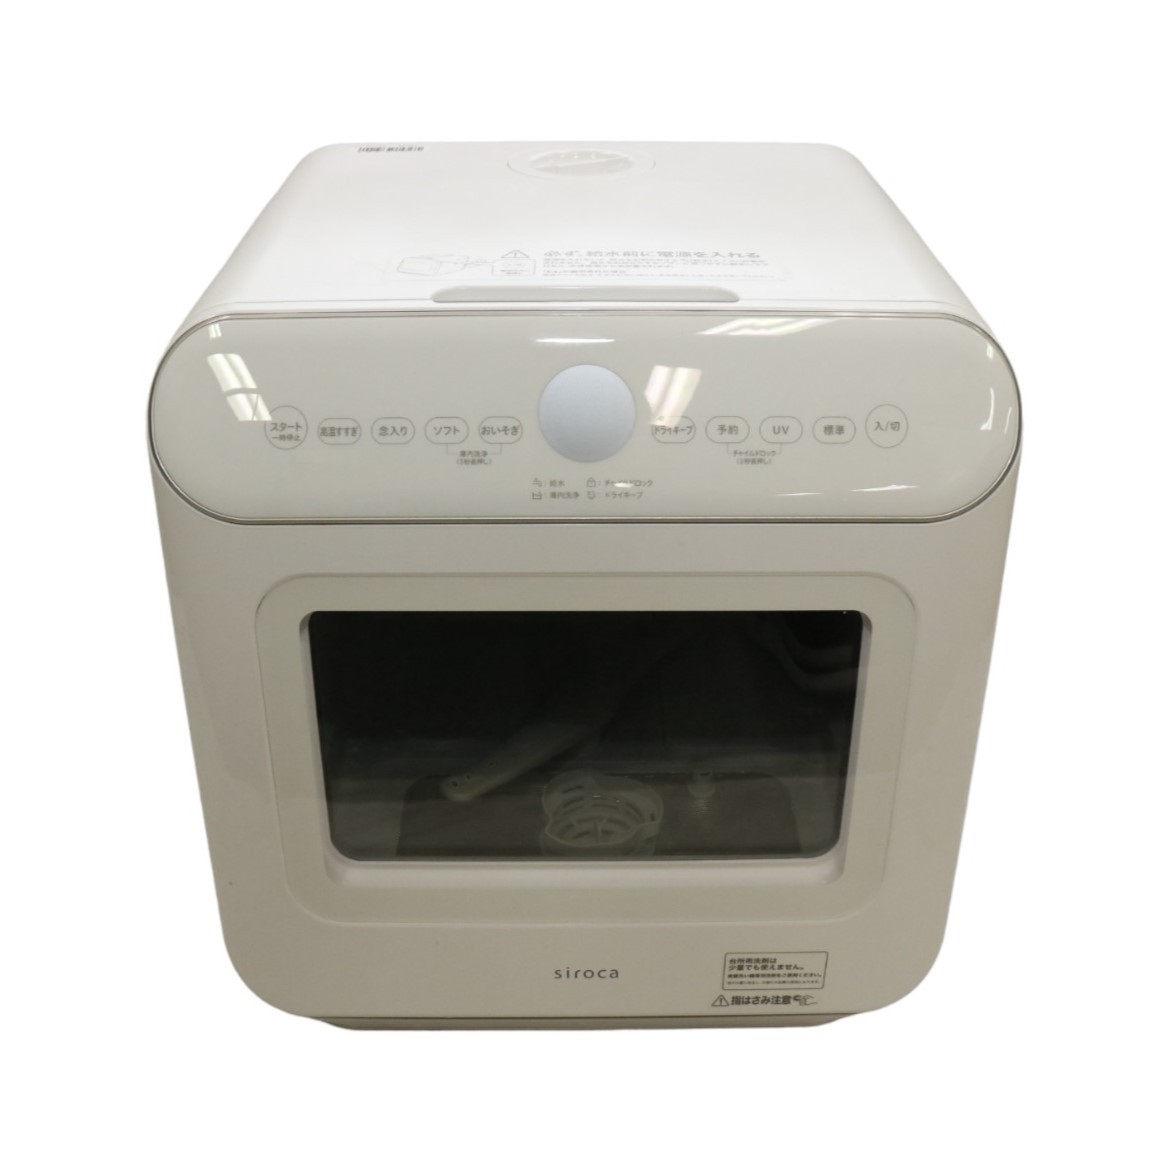 [中古] シロカ アドバンスシリーズ 食器洗い乾燥機 SS-MU251[工事不要/UV除菌タイプ]ss-mu251 [可(C)]